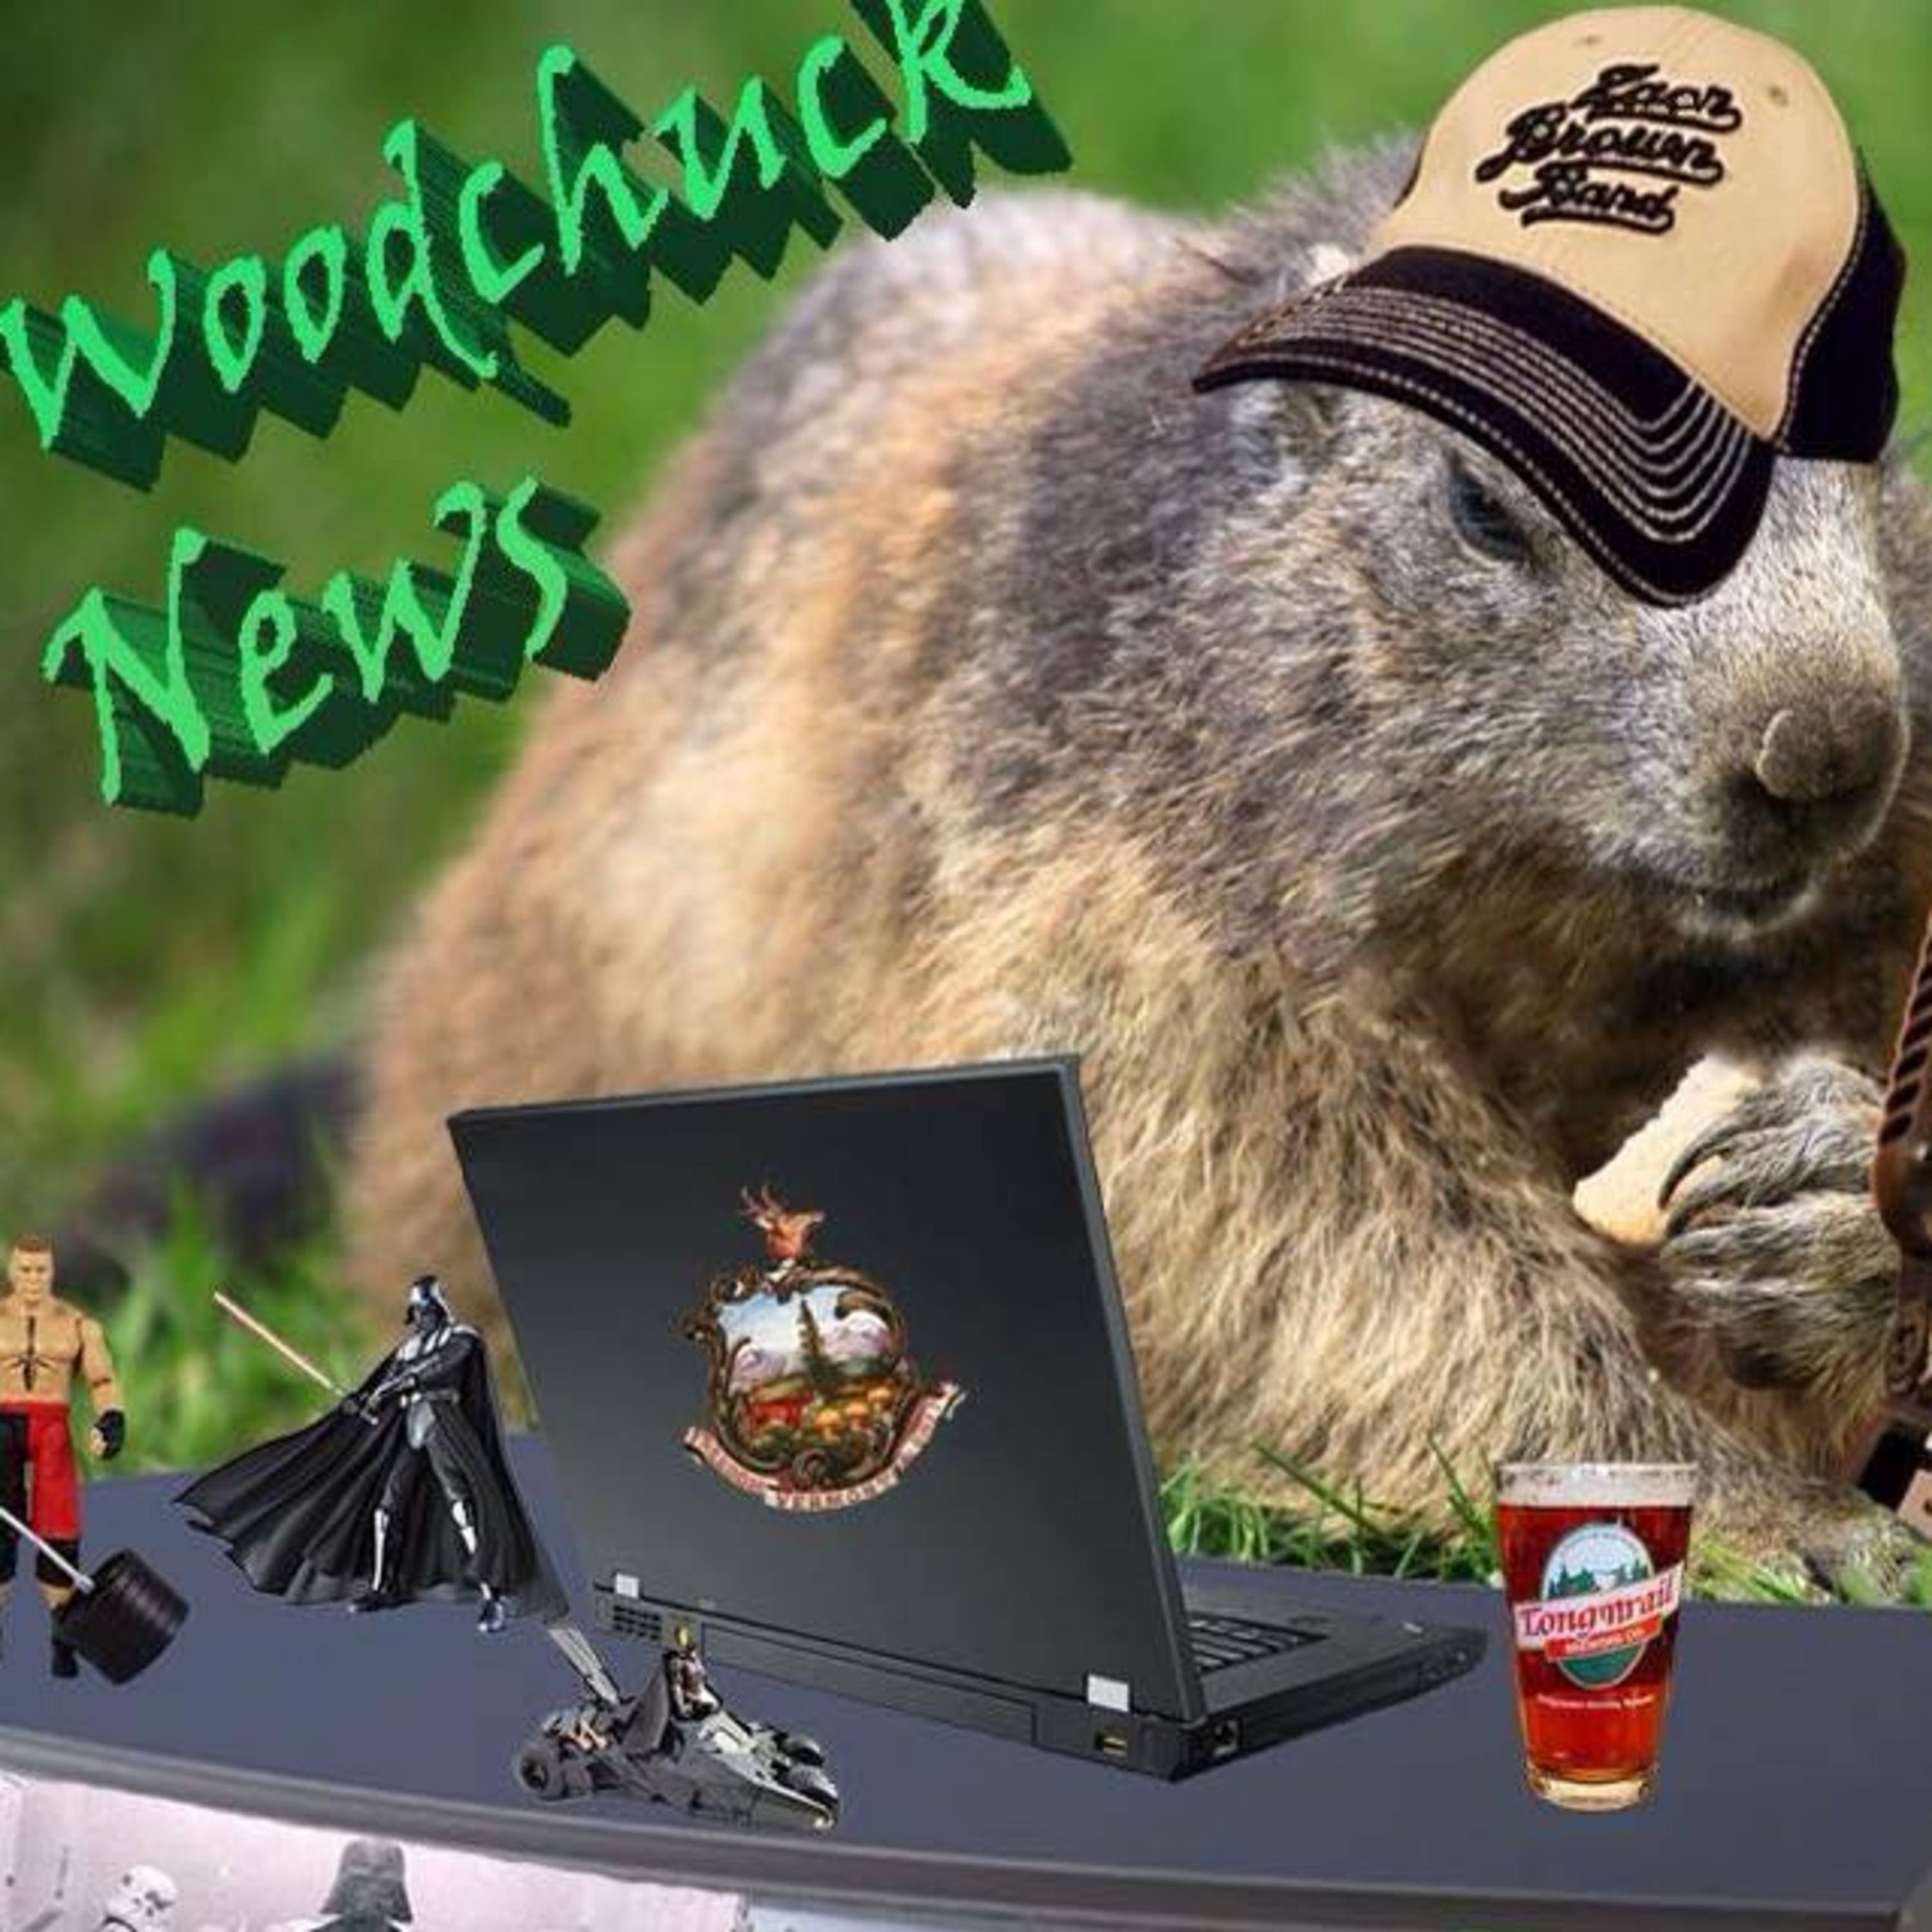 Woodchuck News